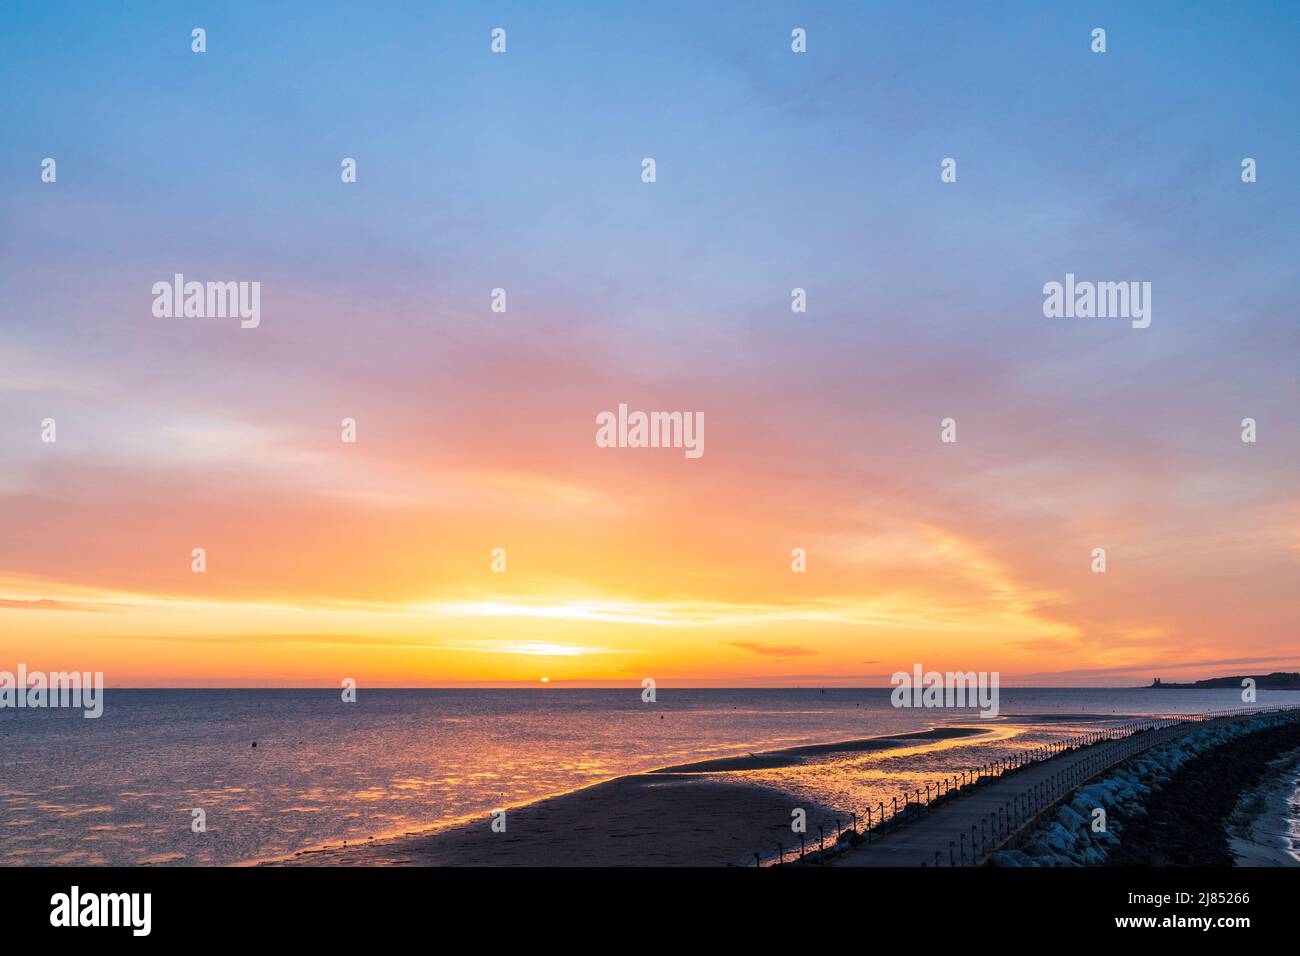 Der Morgenhimmel über der Nordsee, bei Ebbe vom Hafen Herne Bay in Kent aus gesehen. Die Hafenmauer in der Mitte erstreckt sich auf der einen Seite bis zur Stadtpromenade und auf der anderen Seite bis zum orangefarbenen Morgenhimmel über dem Meer. Wolkiger Himmel, aber klares oranges Band am Horizont. Stockfoto